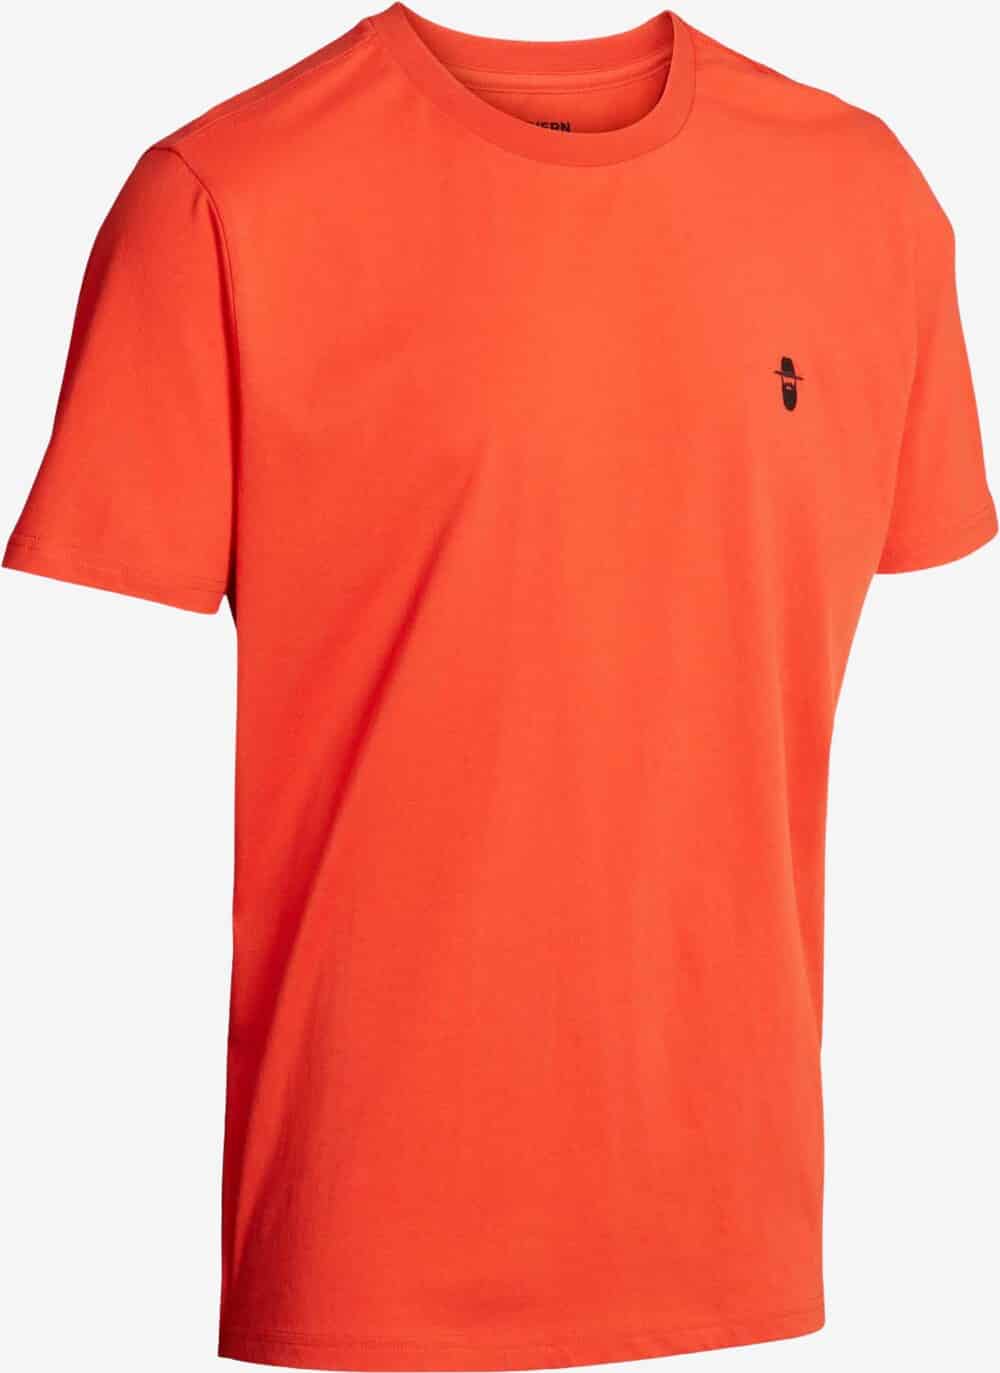 Se Northern Hunting - Karl T-shirt (Orange) - S hos Friluft.dk